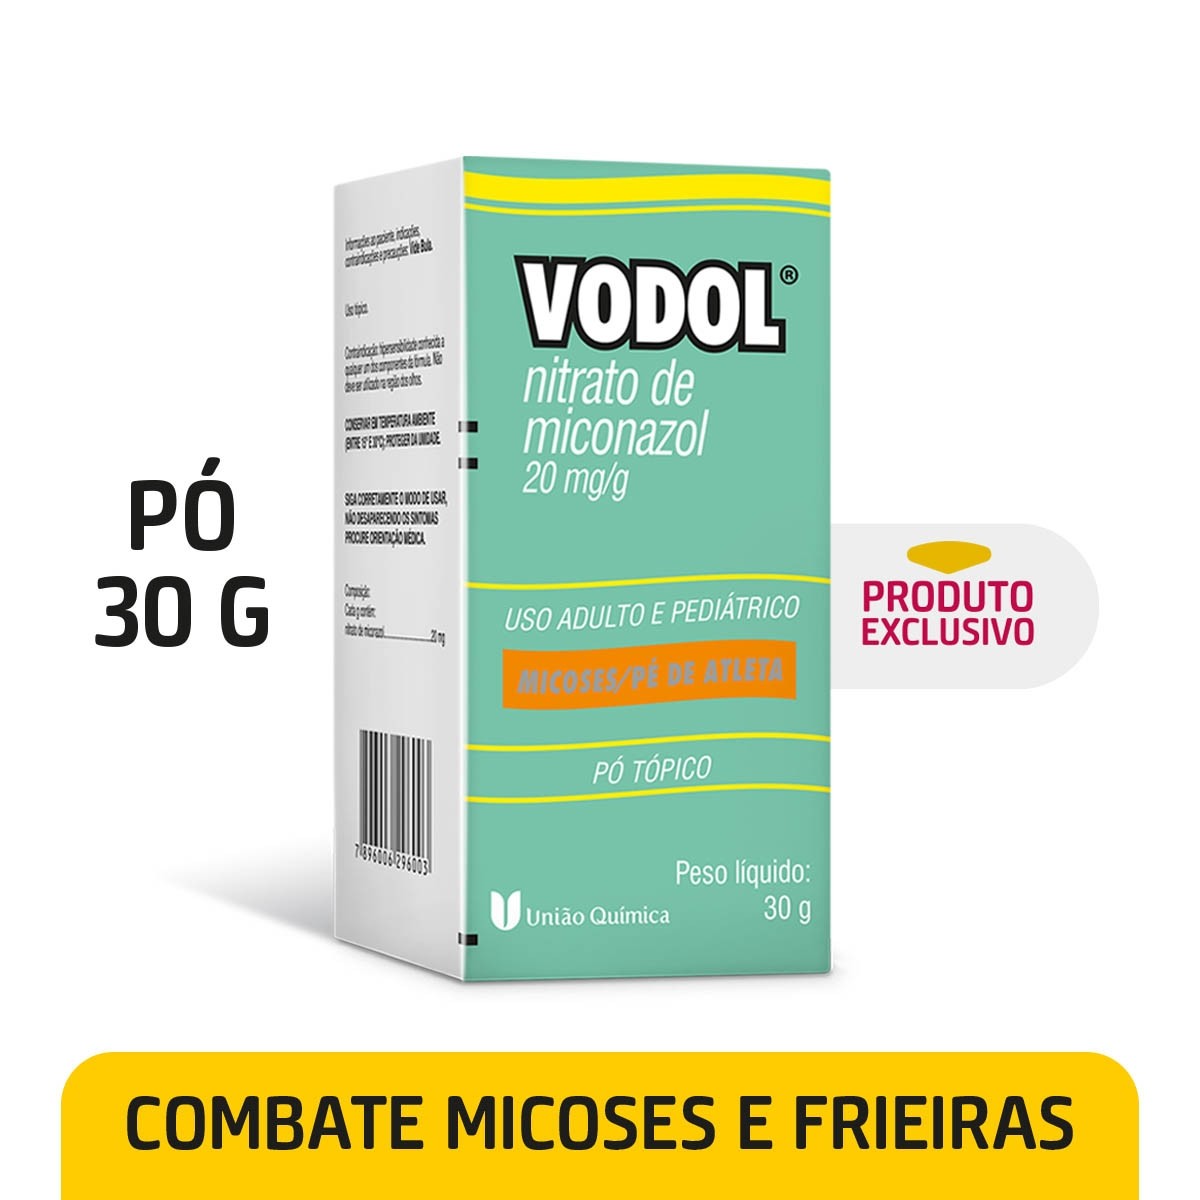 https://www.drogariaminasbrasil.com.br/media/product/947/vodol-20mg-g-po-topico-c-30-g-c75.jpg